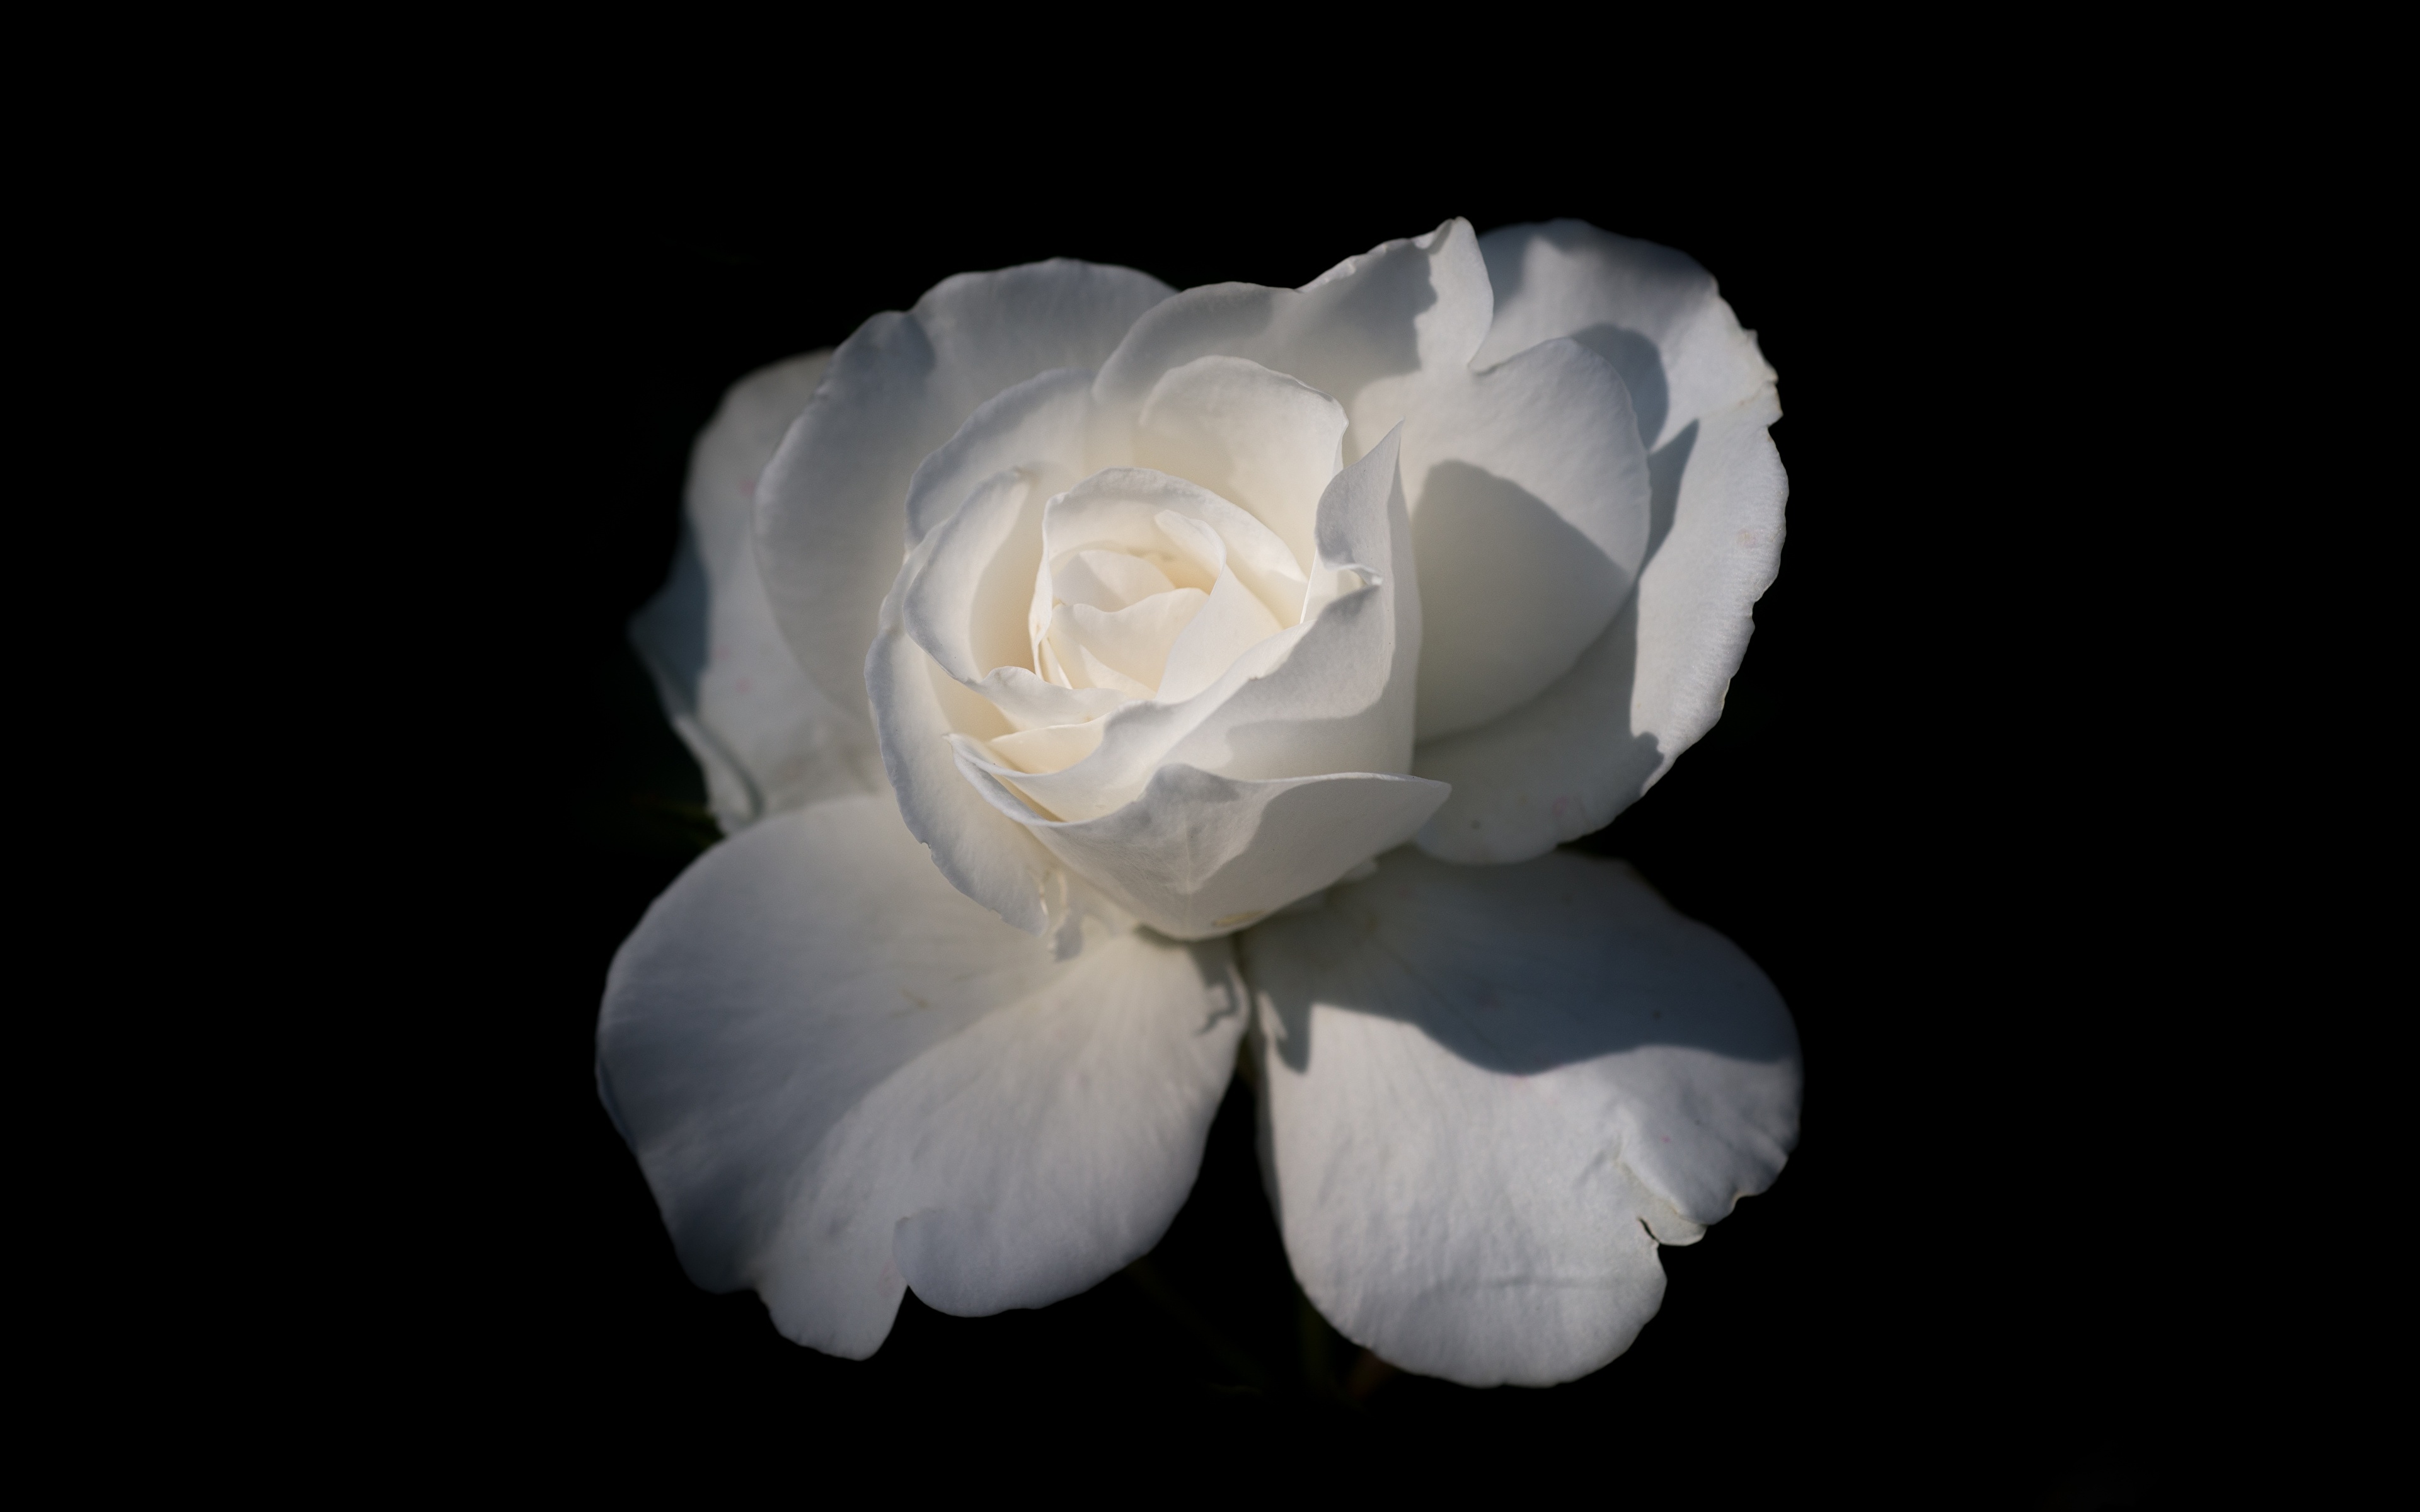 Картинка Розы белая цветок вблизи Черный фон 3840x2400 роза Белый белые белых Цветы на черном фоне Крупным планом